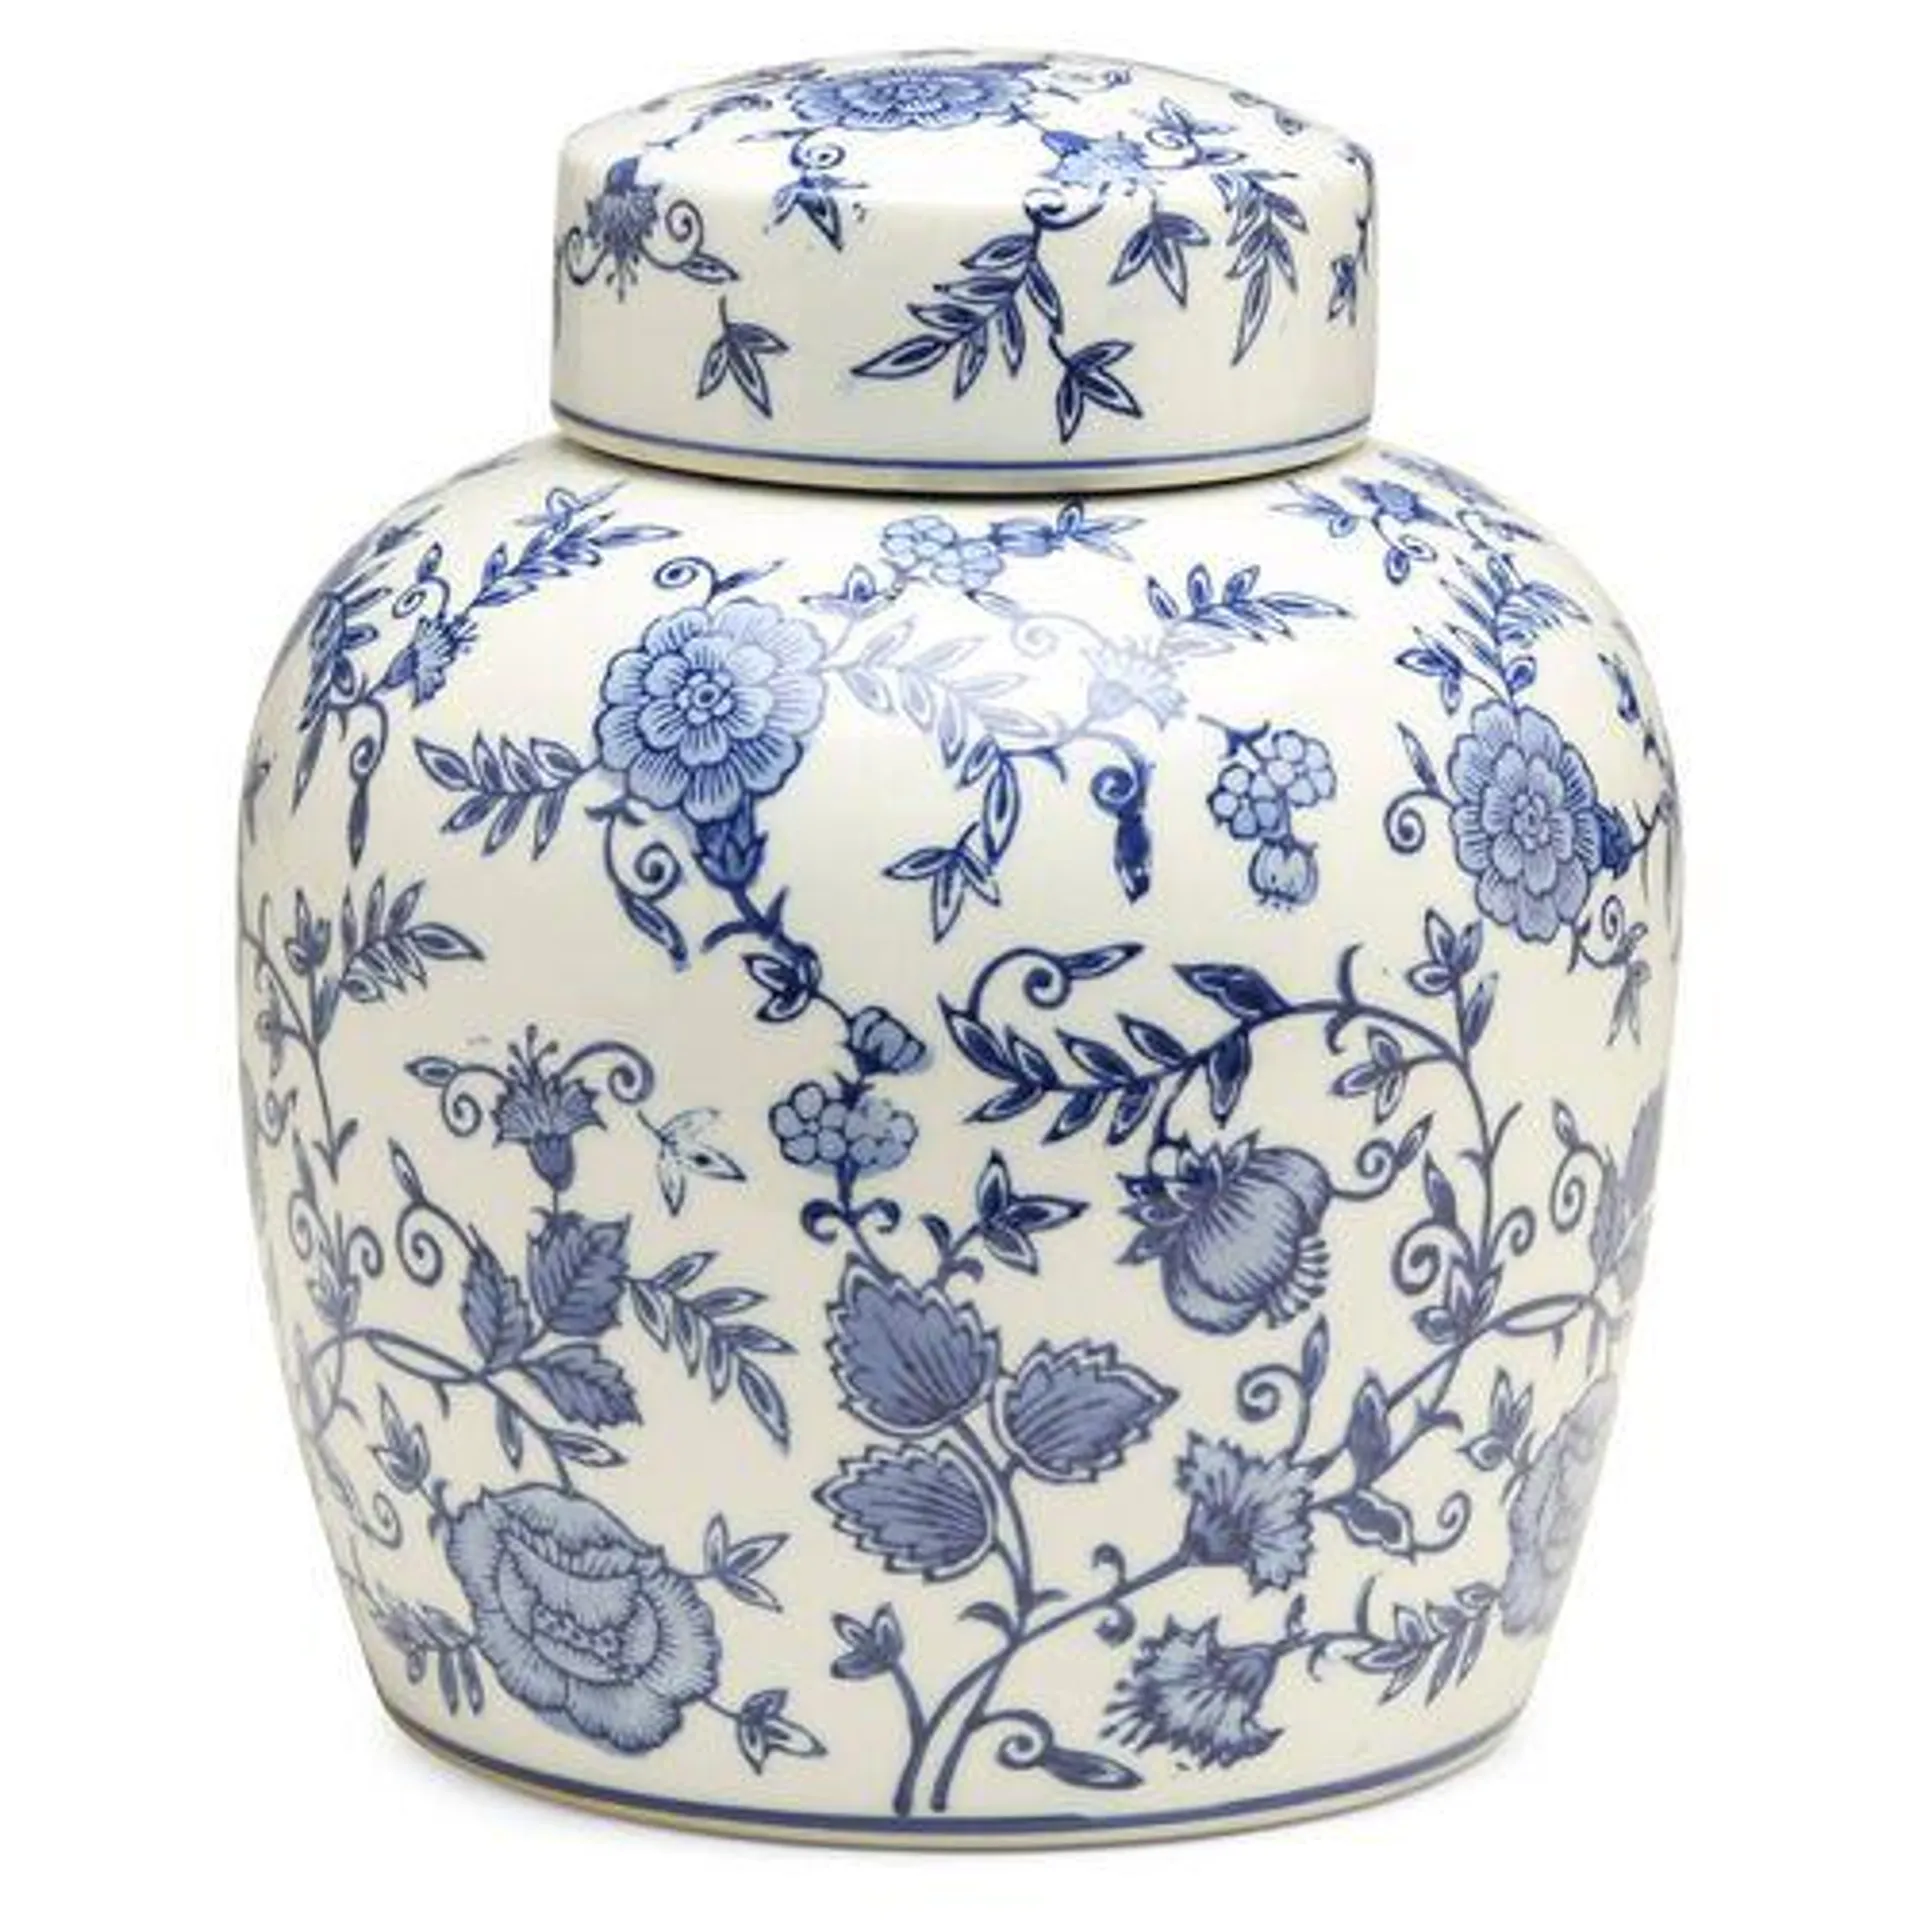 10" Arundel Round Ginger Jar, Blue/White